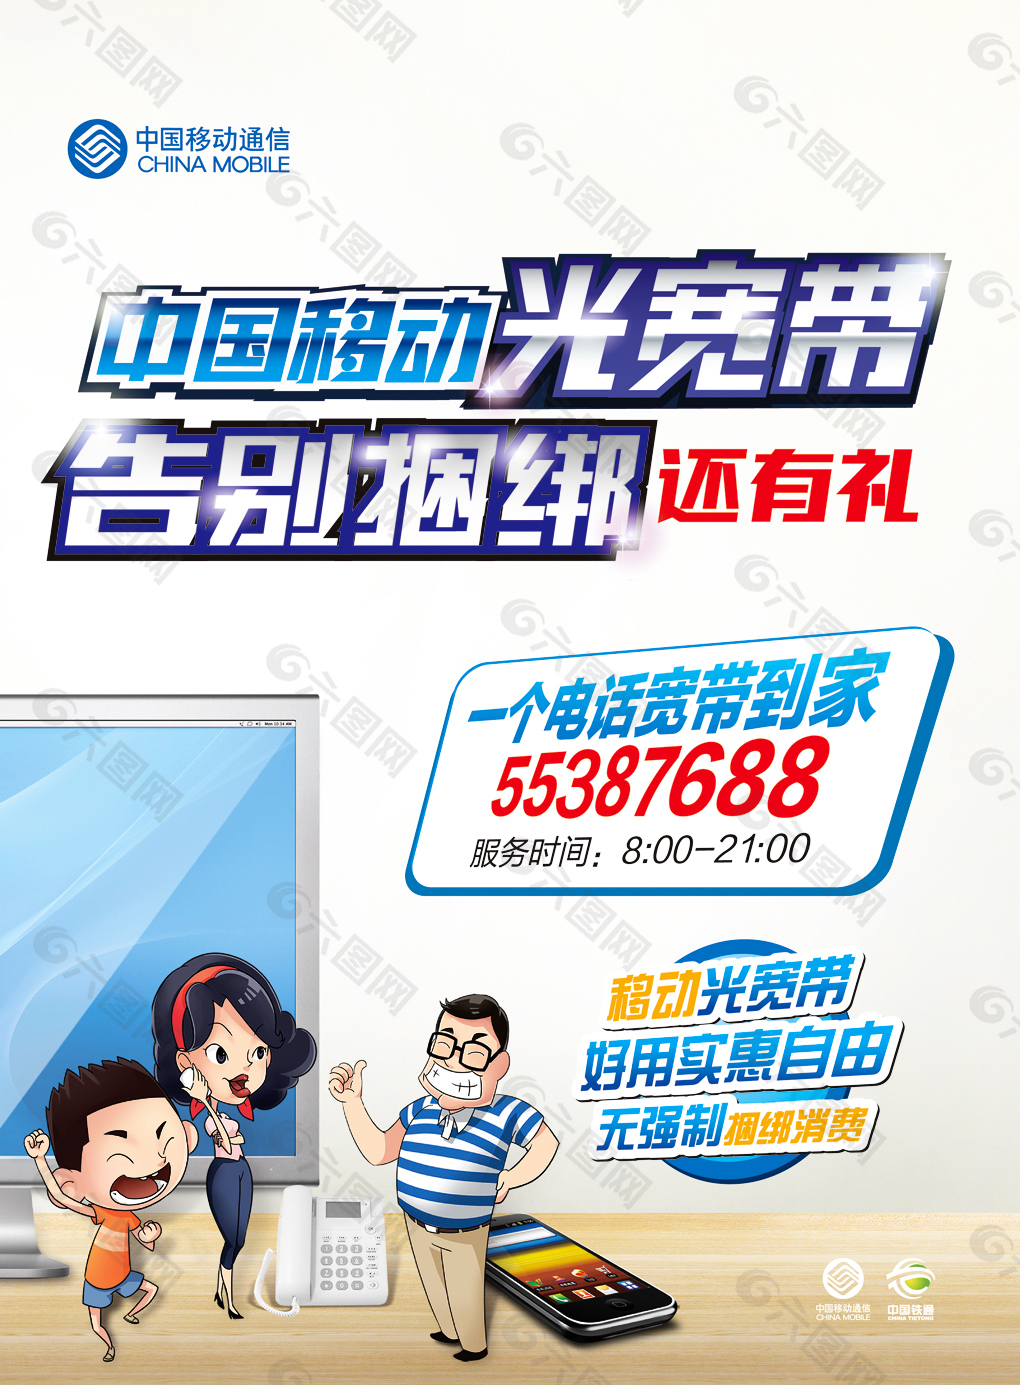 中国移动海报平面广告素材免费下载(图片编号:6174613)